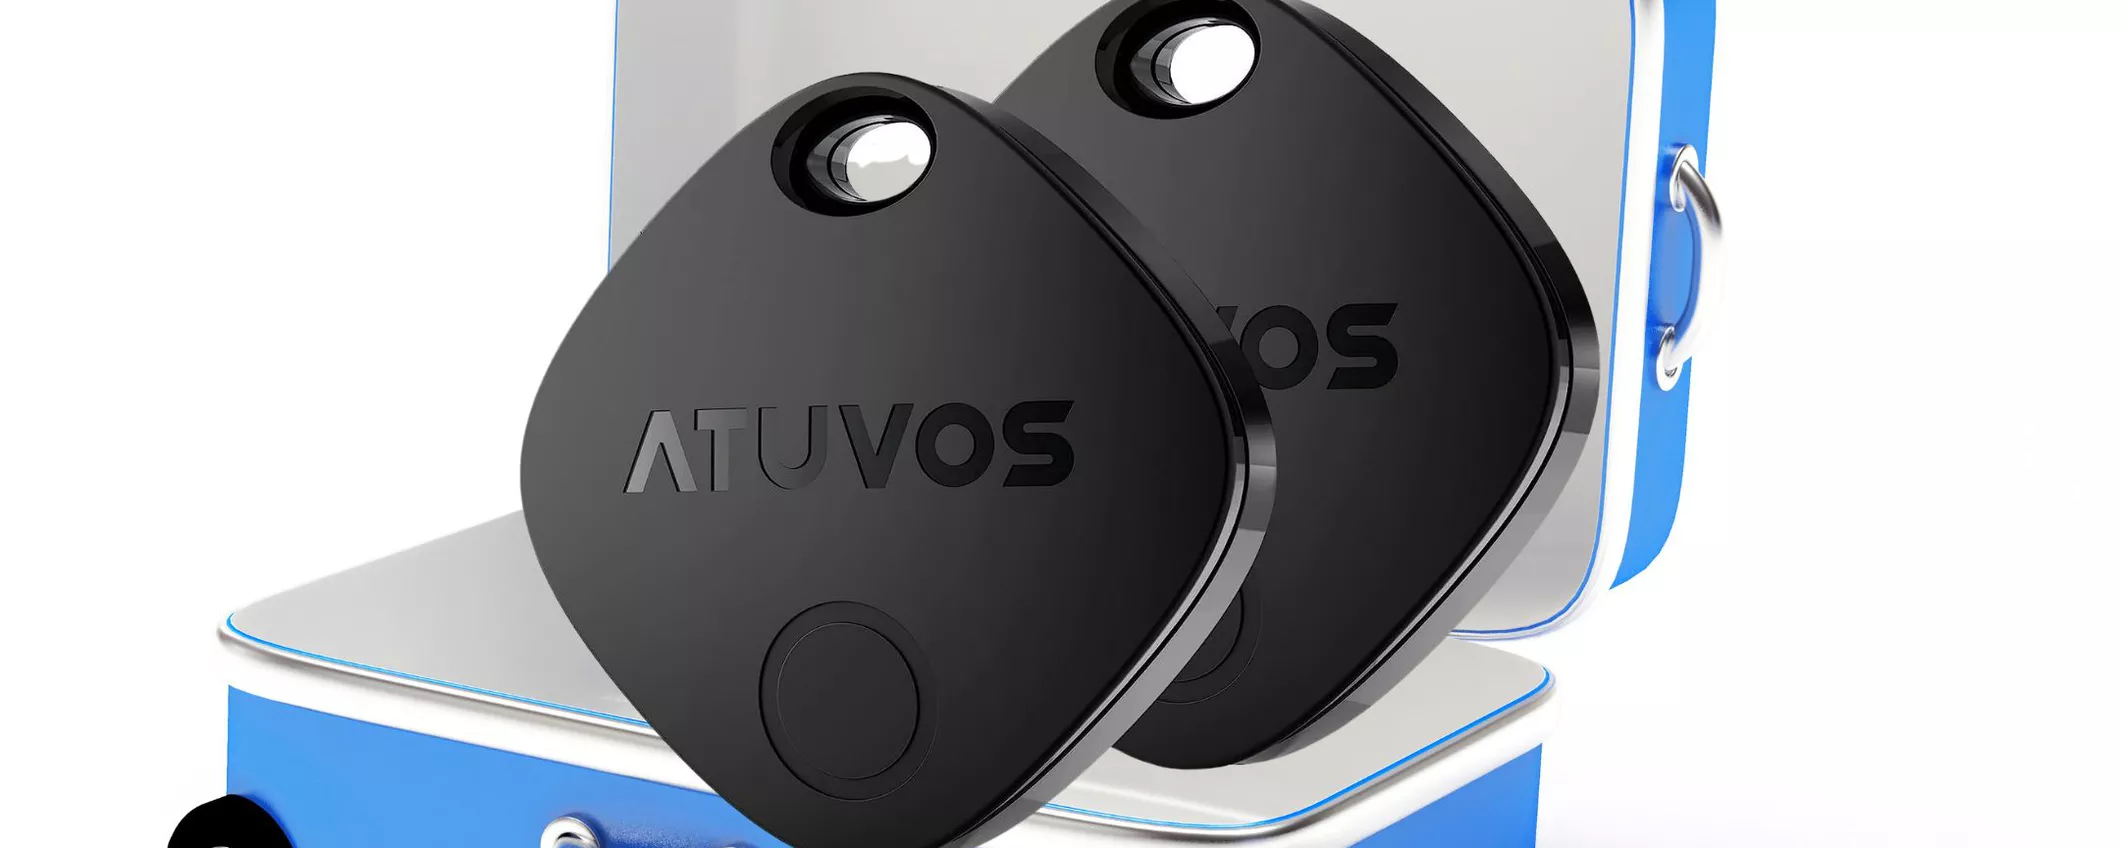 Non perdere i tuoi oggetti: Smart Tracker ATUVOS costa MENO di Apple AirTag!